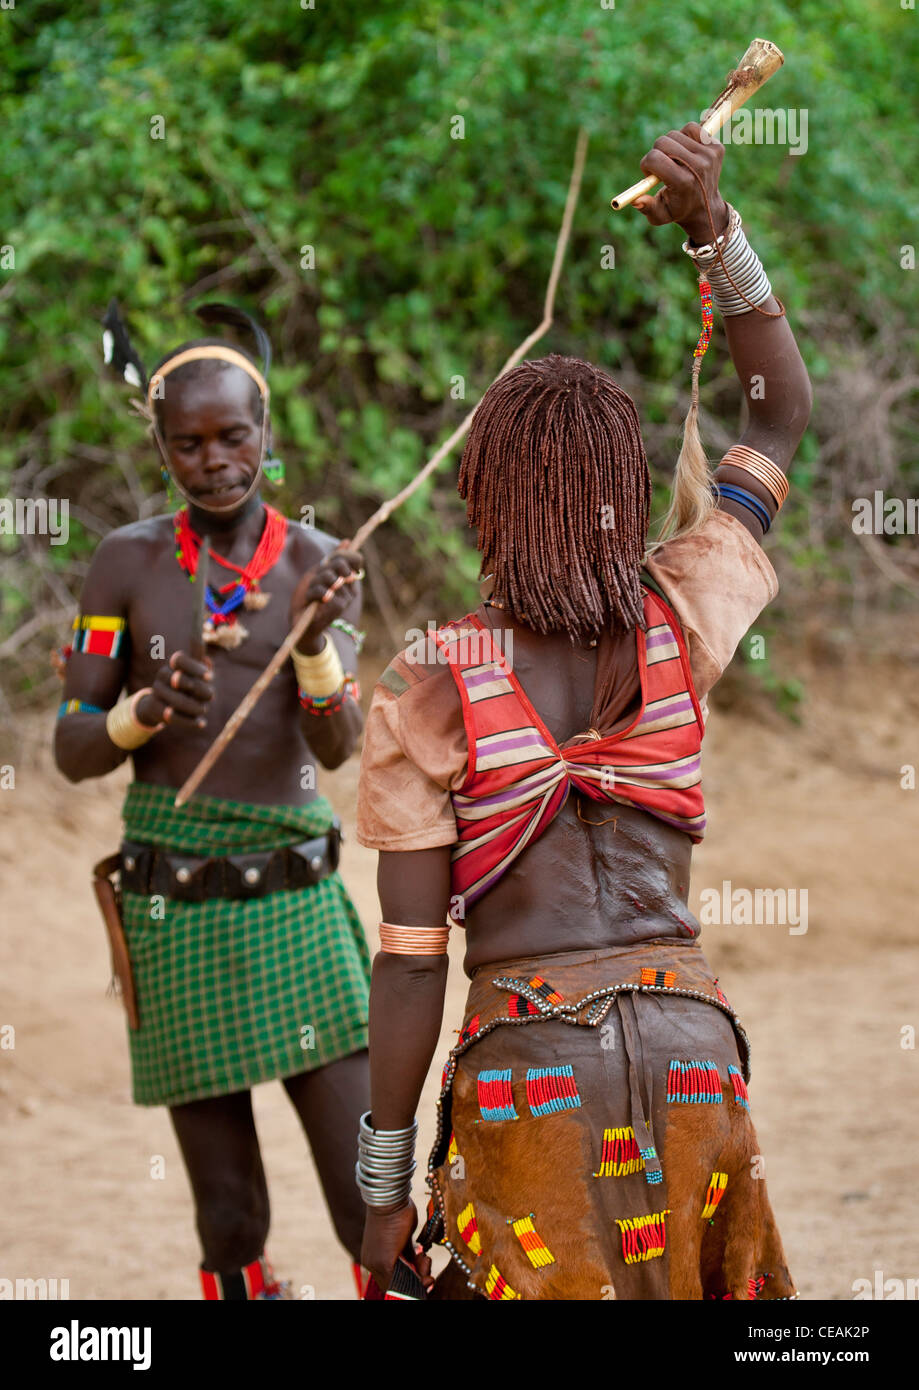 Whipper vor der Hamer Frau wird er sich feiern Stier springen Zeremonie Äthiopien prügeln Stockfoto